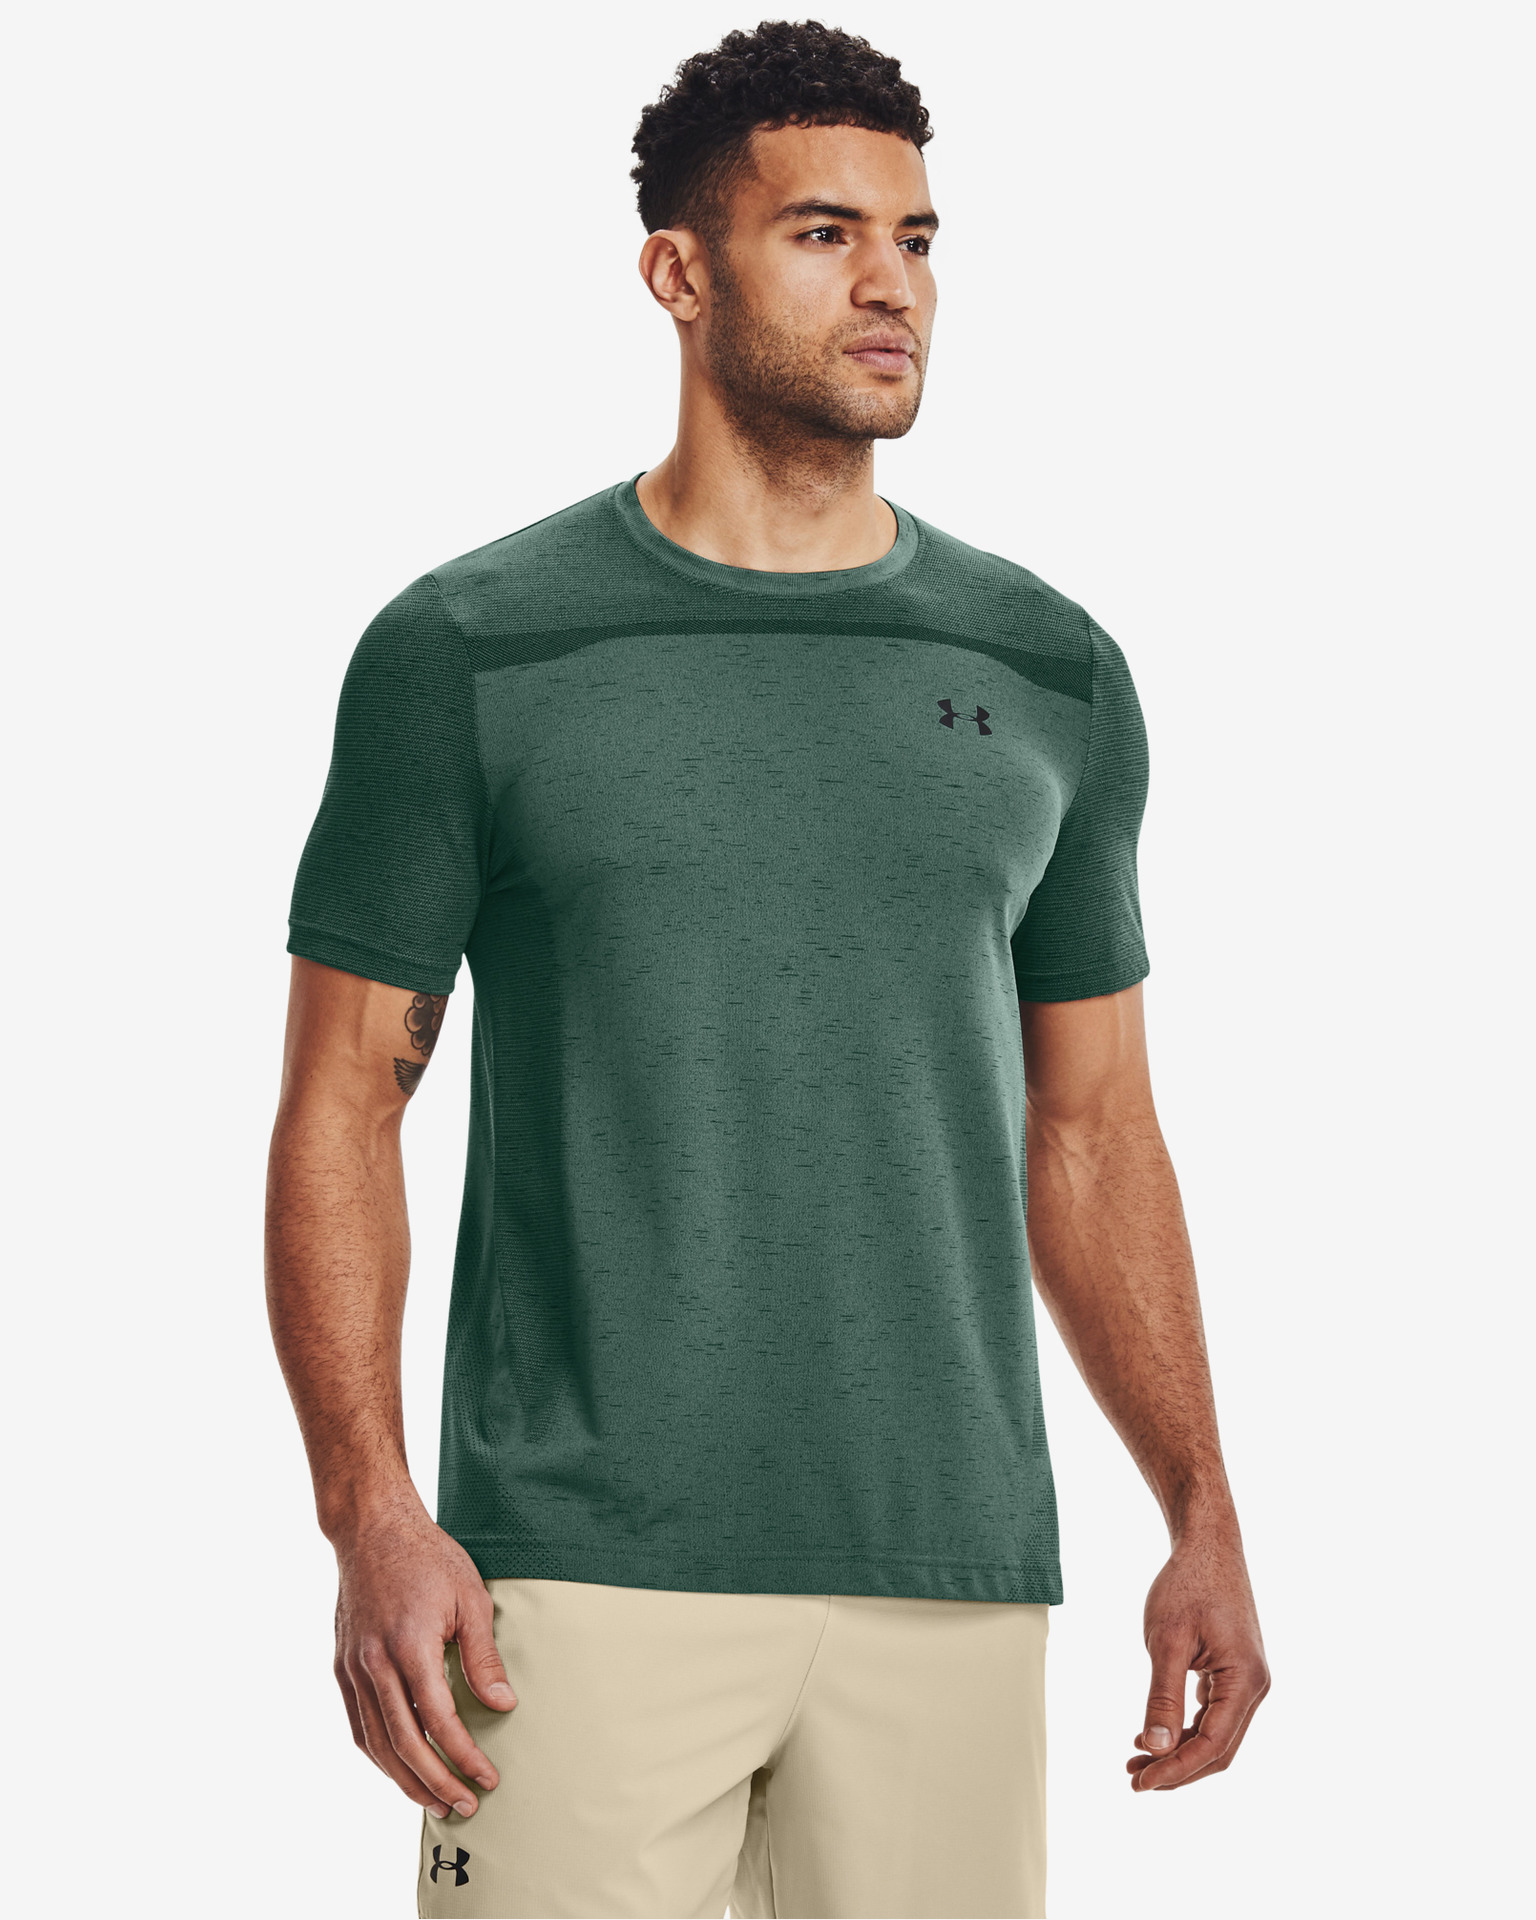 mens green under armour t shirt